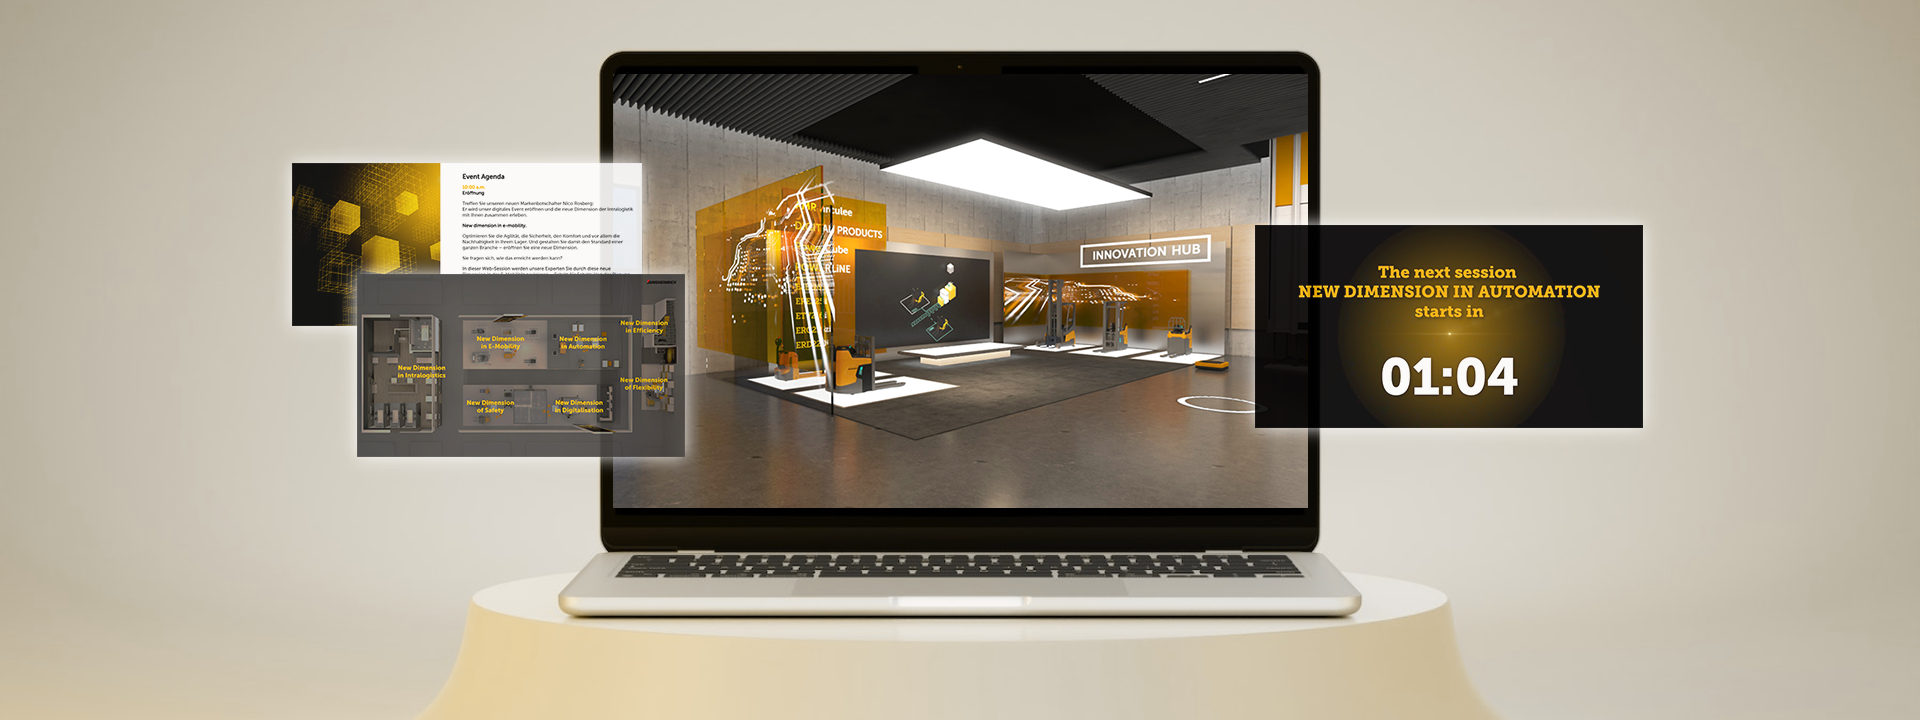 Virtuelle Veranstaltung der Jungheinrich AG mit Vorträgen und einer virtuellen Umgebung